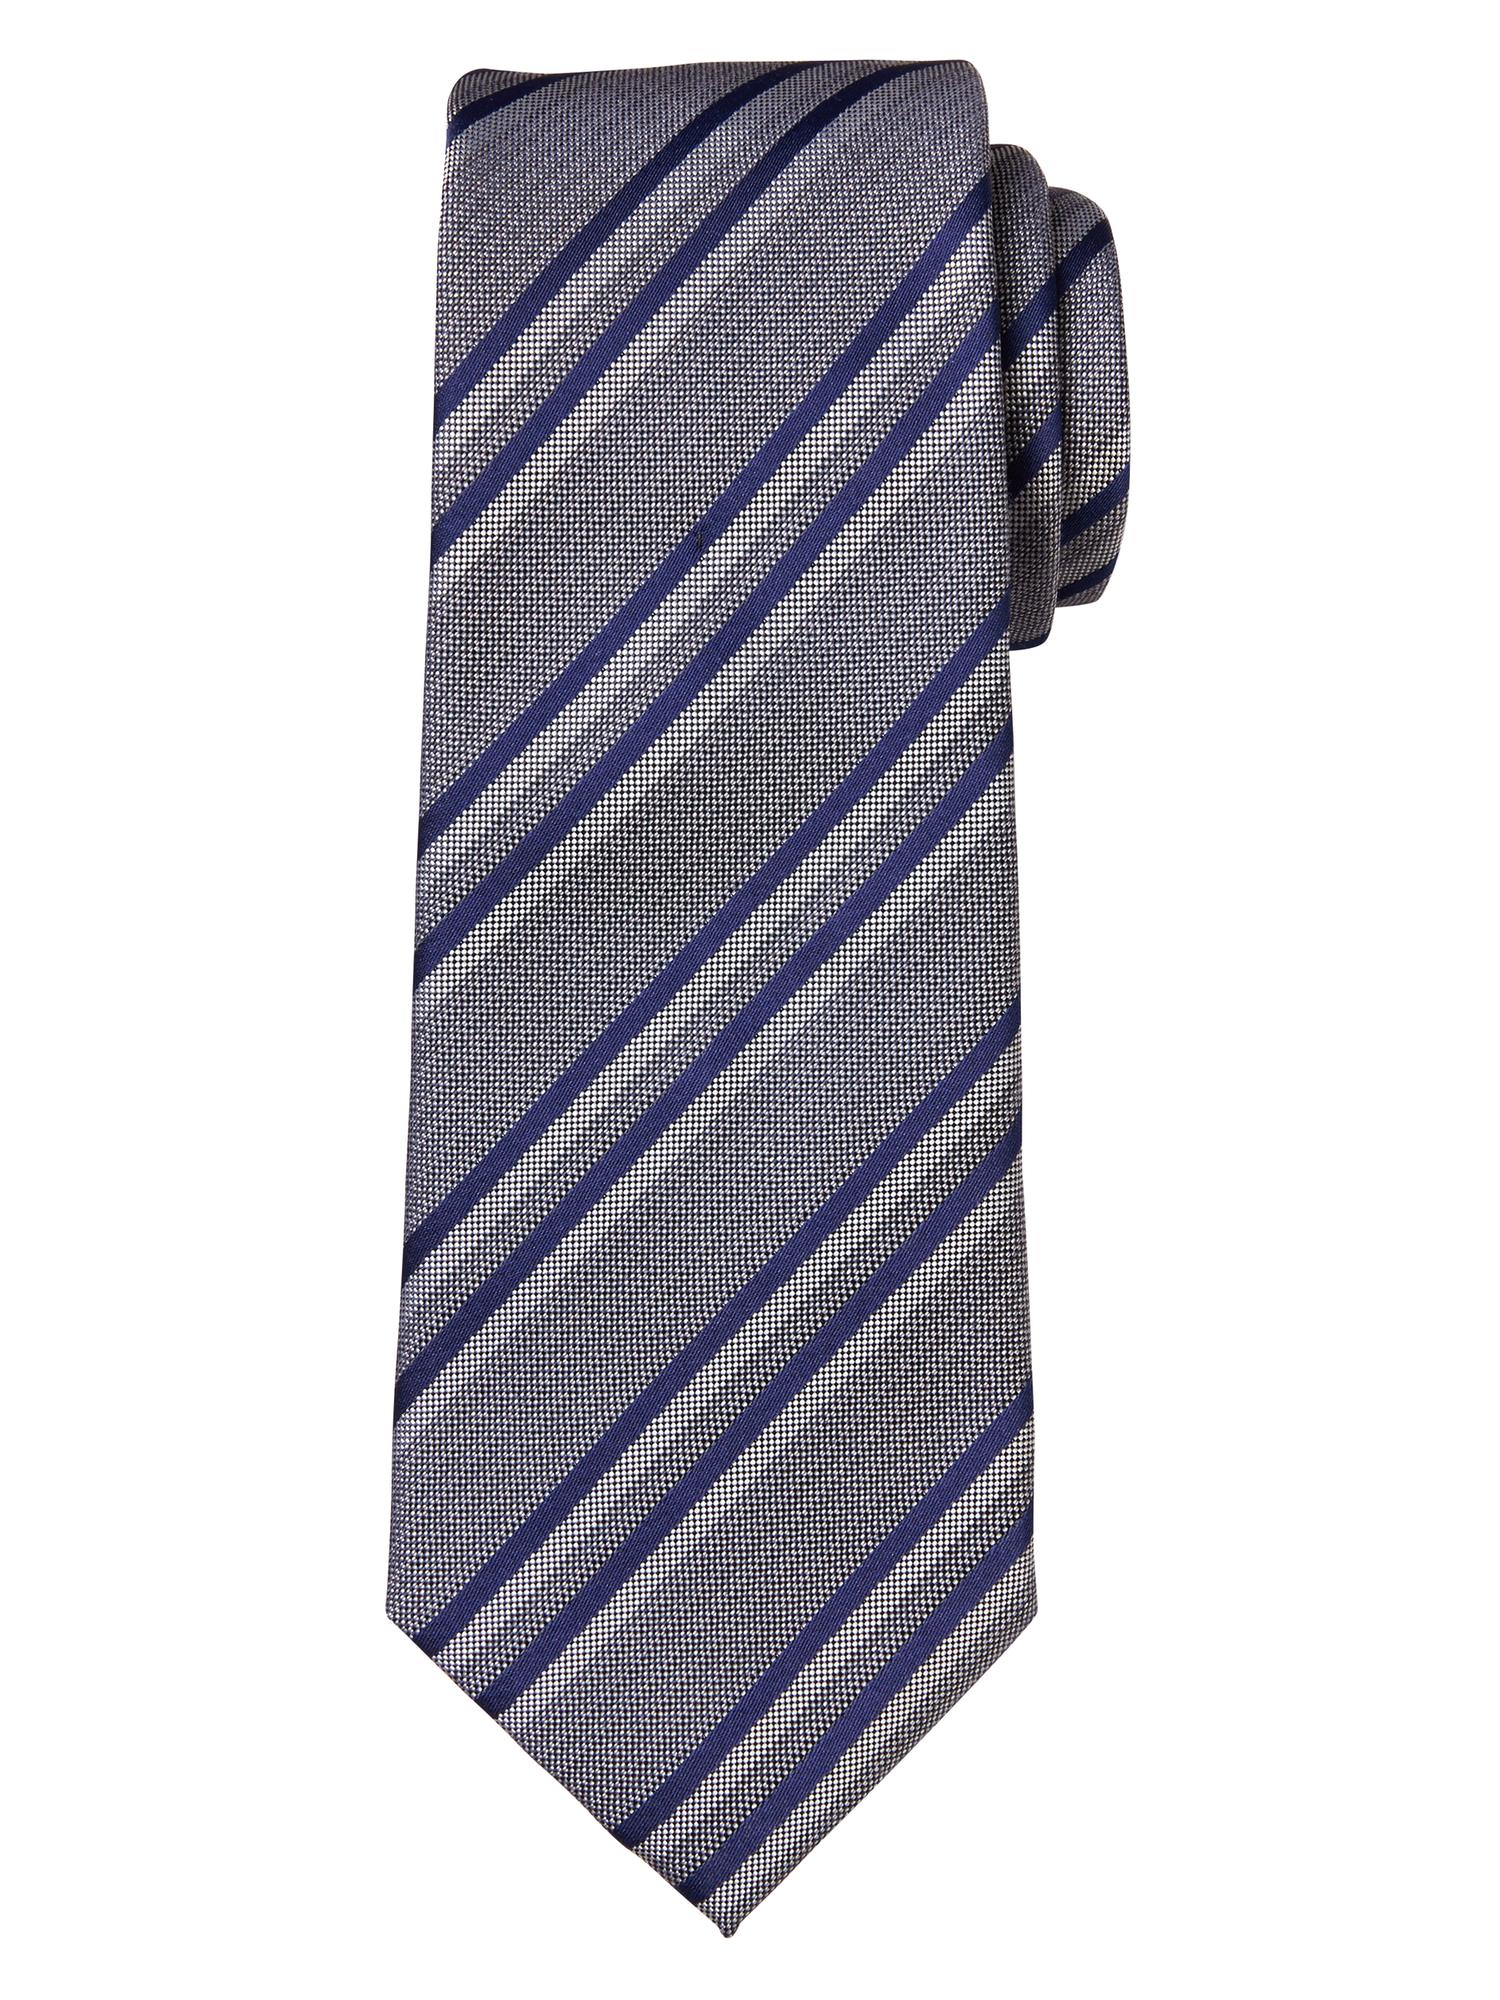 Grey/Cobalt Stripe Tie